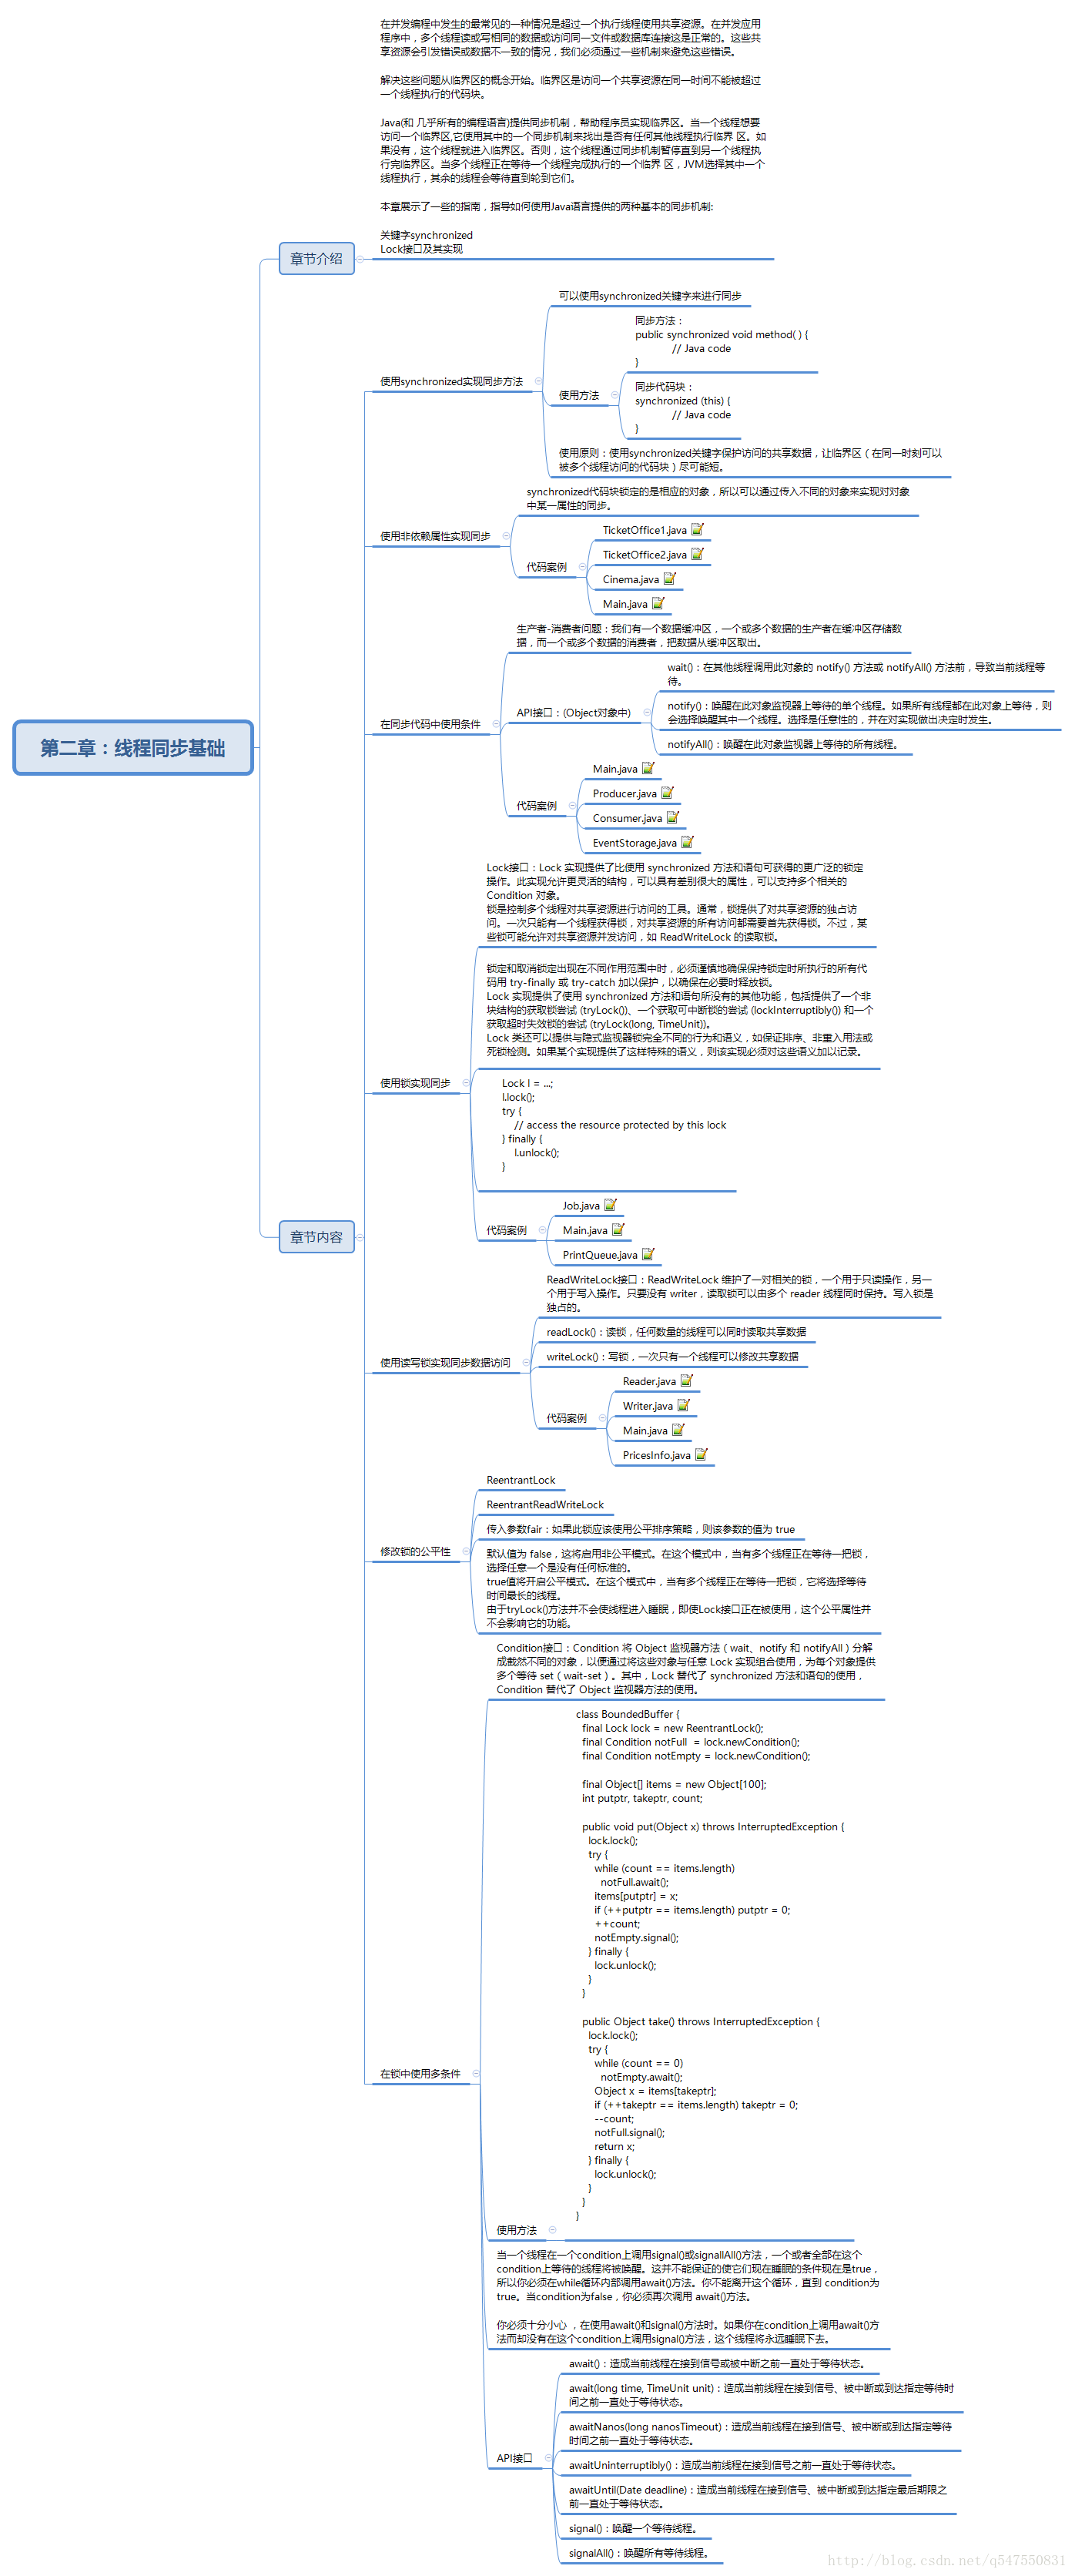 Java7并发编程指南——第二章：线程同步基础